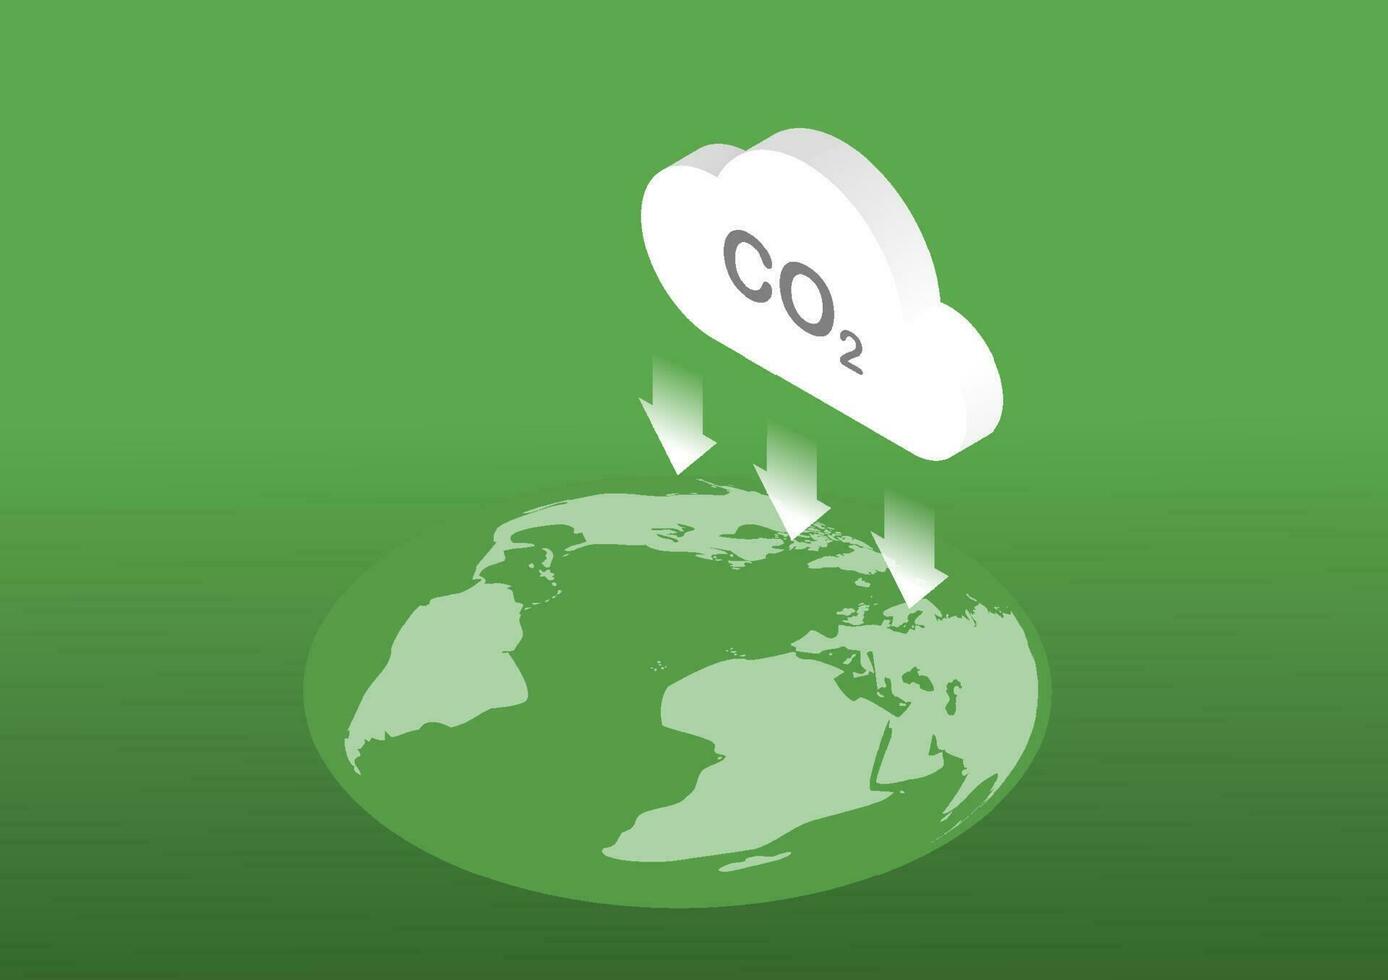 minskning av koldioxid utsläpp till jorden. vektor